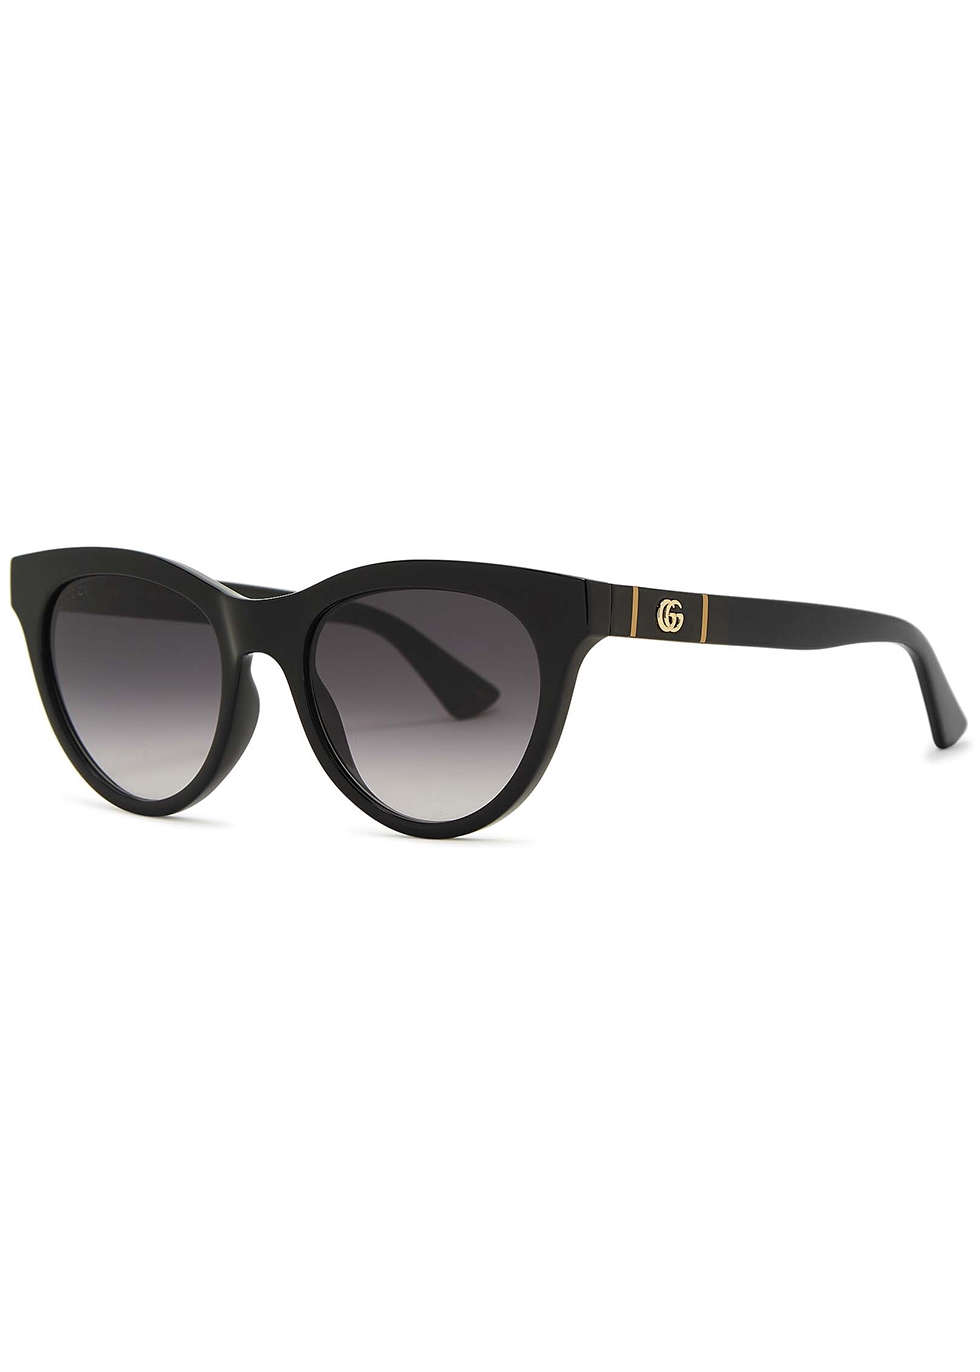 Gucci Black cat-eye sunglasses - Harvey Nichols